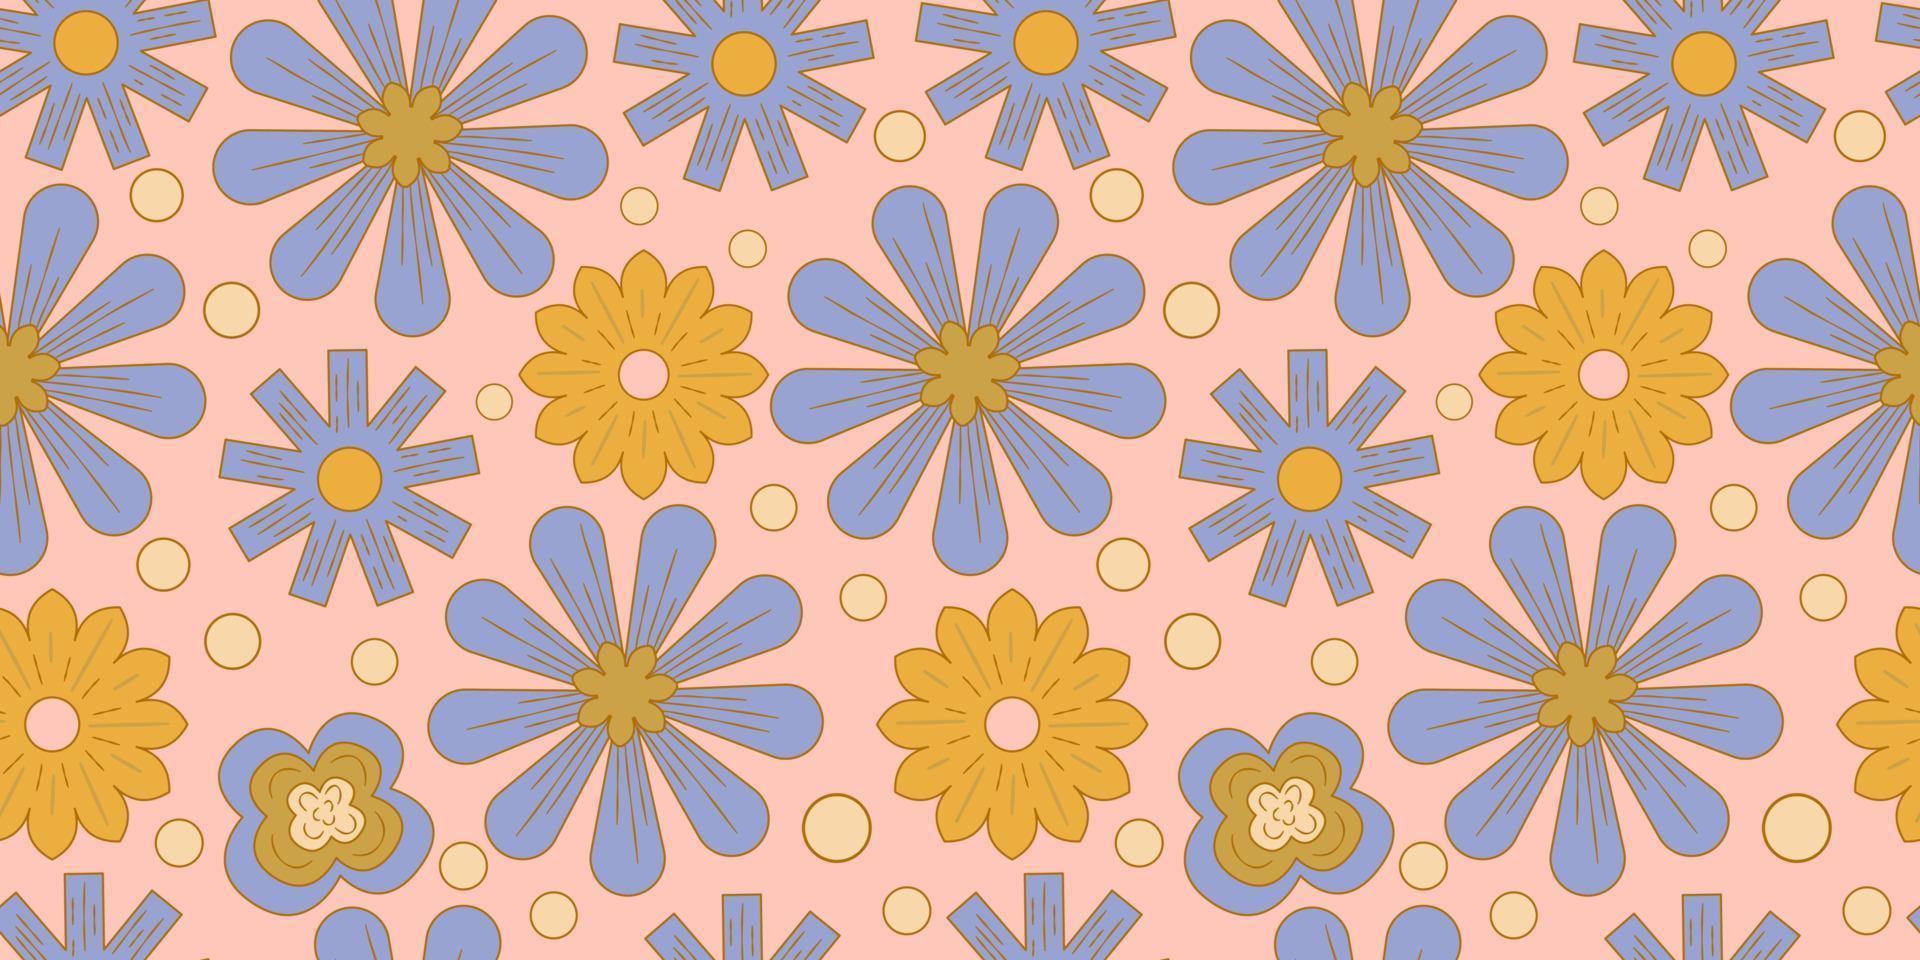 Groovy y2k retro de patrones sin fisuras con flor, arco iris. ilustración vectorial retro. fondo de flores maravillosas. Ilustración de patrones sin fisuras hippie colorido. vector